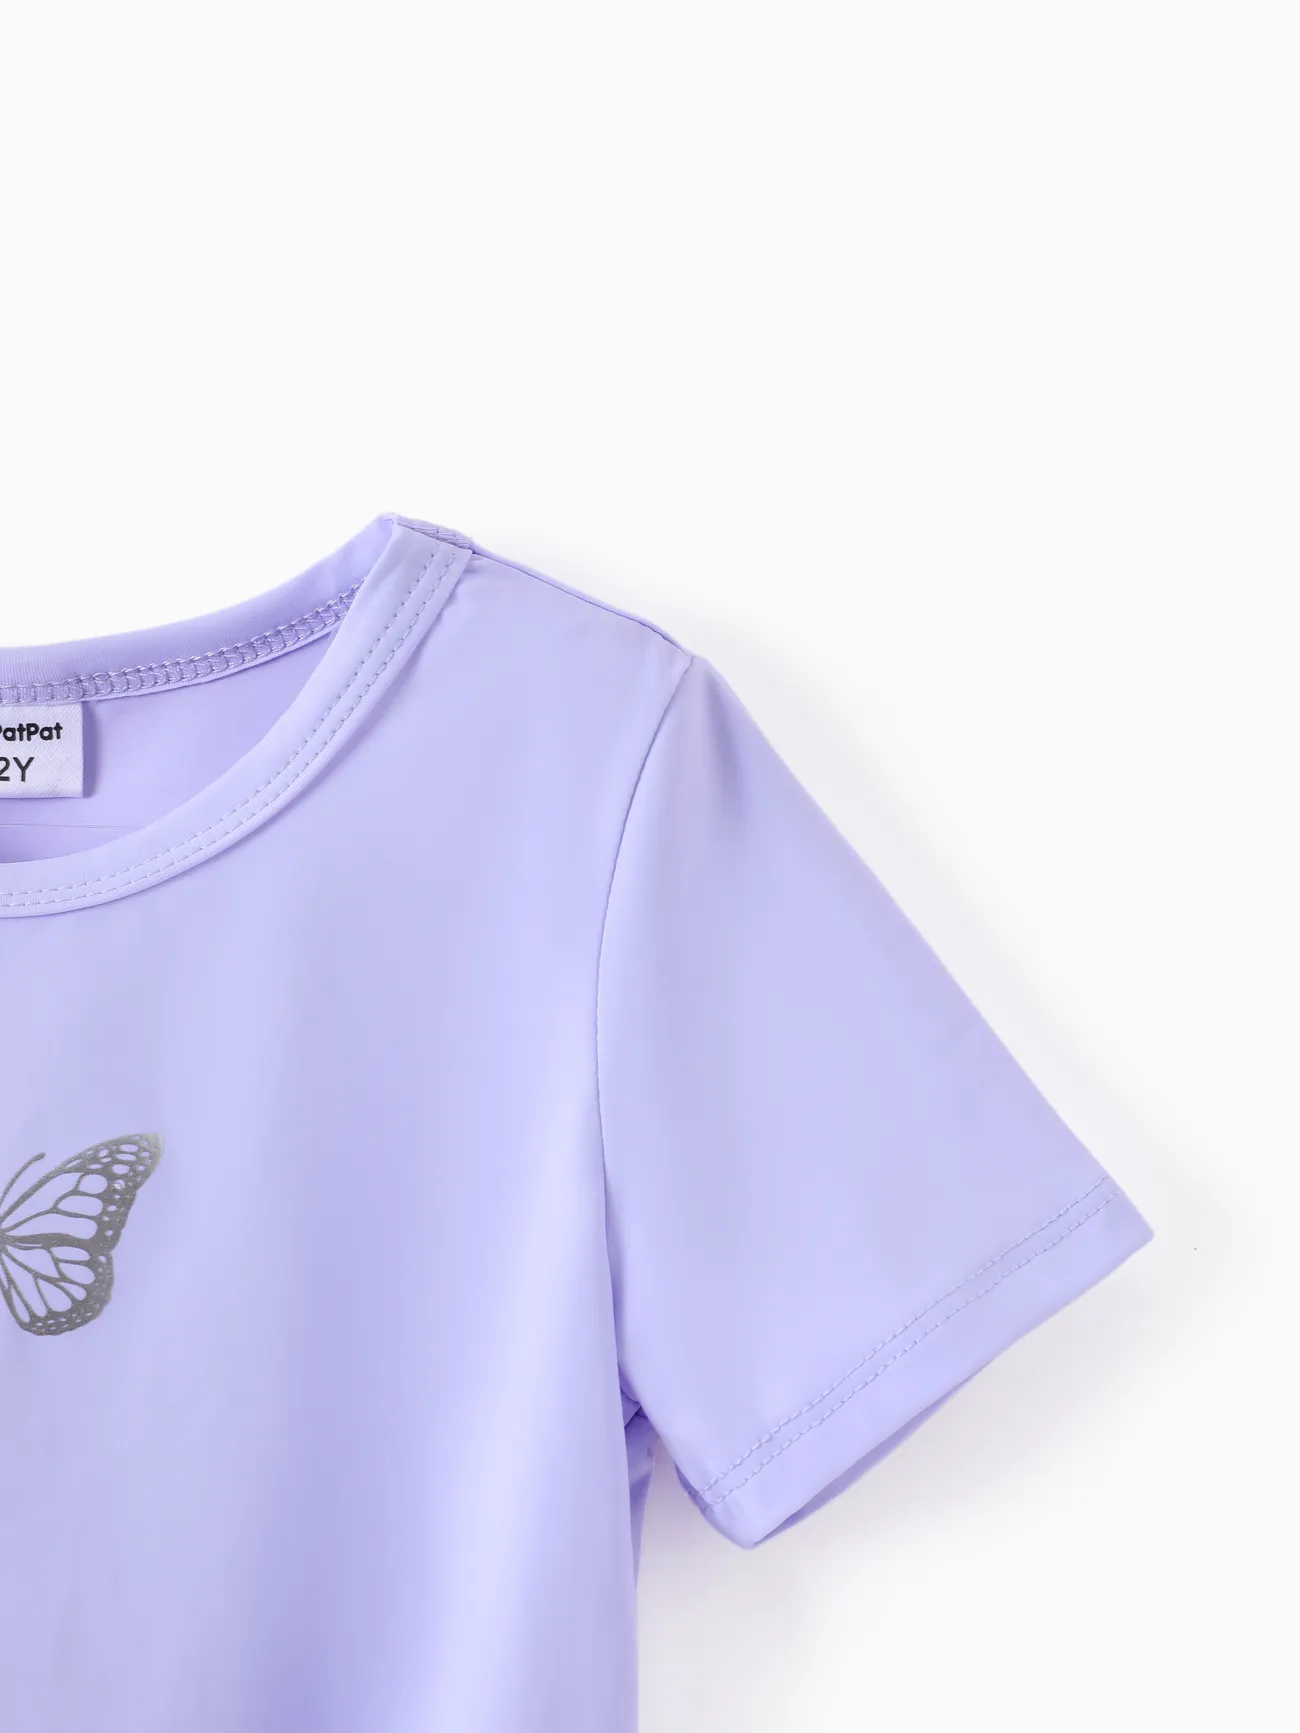 Juego de camisetas y polainas para niños pequeños / niñas de 2 piezas Púrpura big image 1